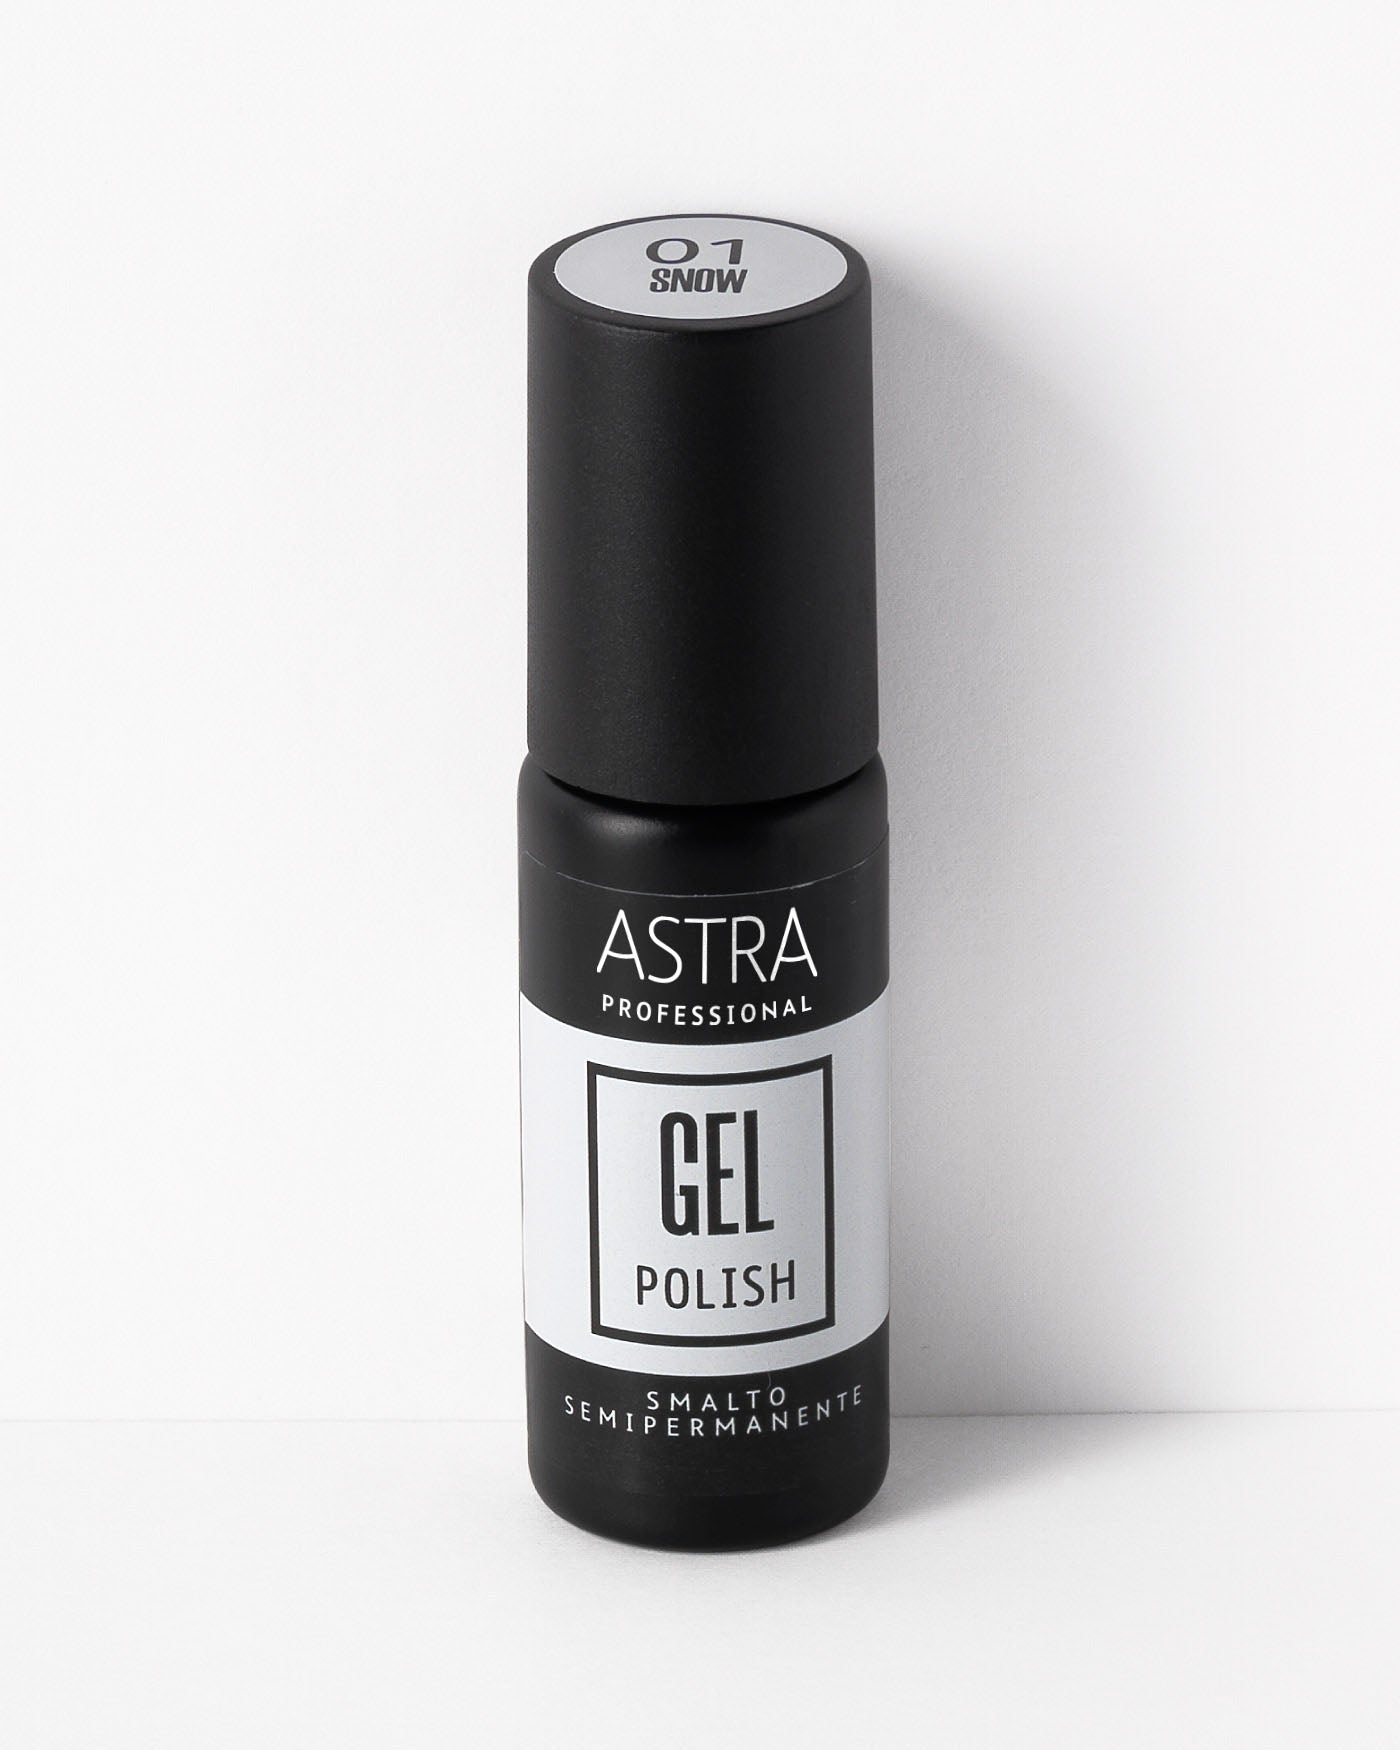 PROFESSIONAL GEL POLISH - Smalto Semipermanente - Professional Colori Smalti - Astra Make-Up